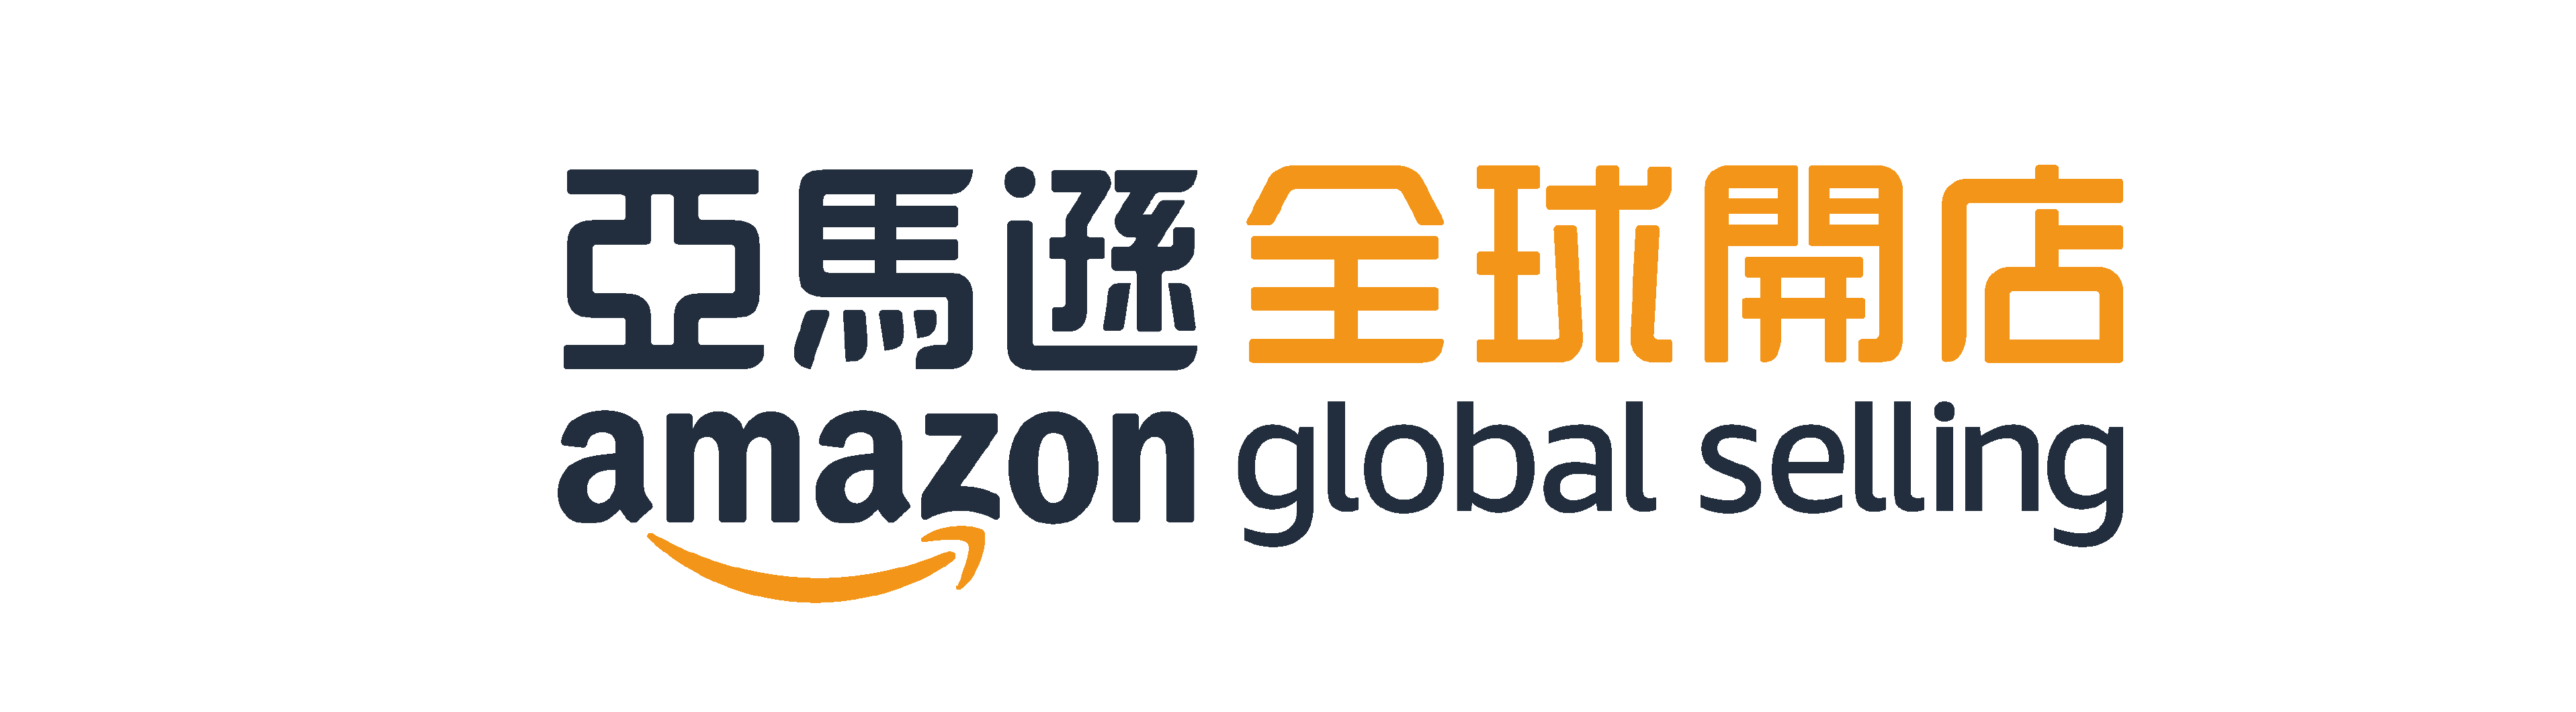 amazon global selling